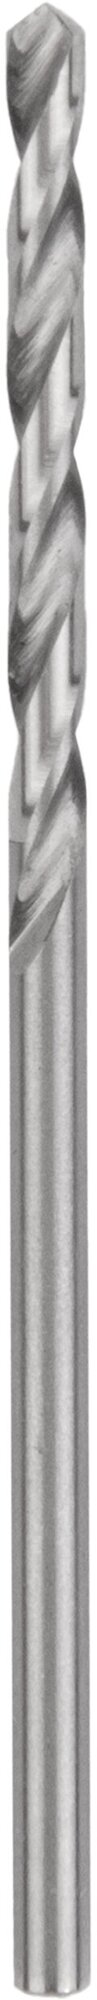 Сверло по металлу и чугуну 0,8 мм NORGAU Industrial из быстрорежущей HSS стали, DIN 338